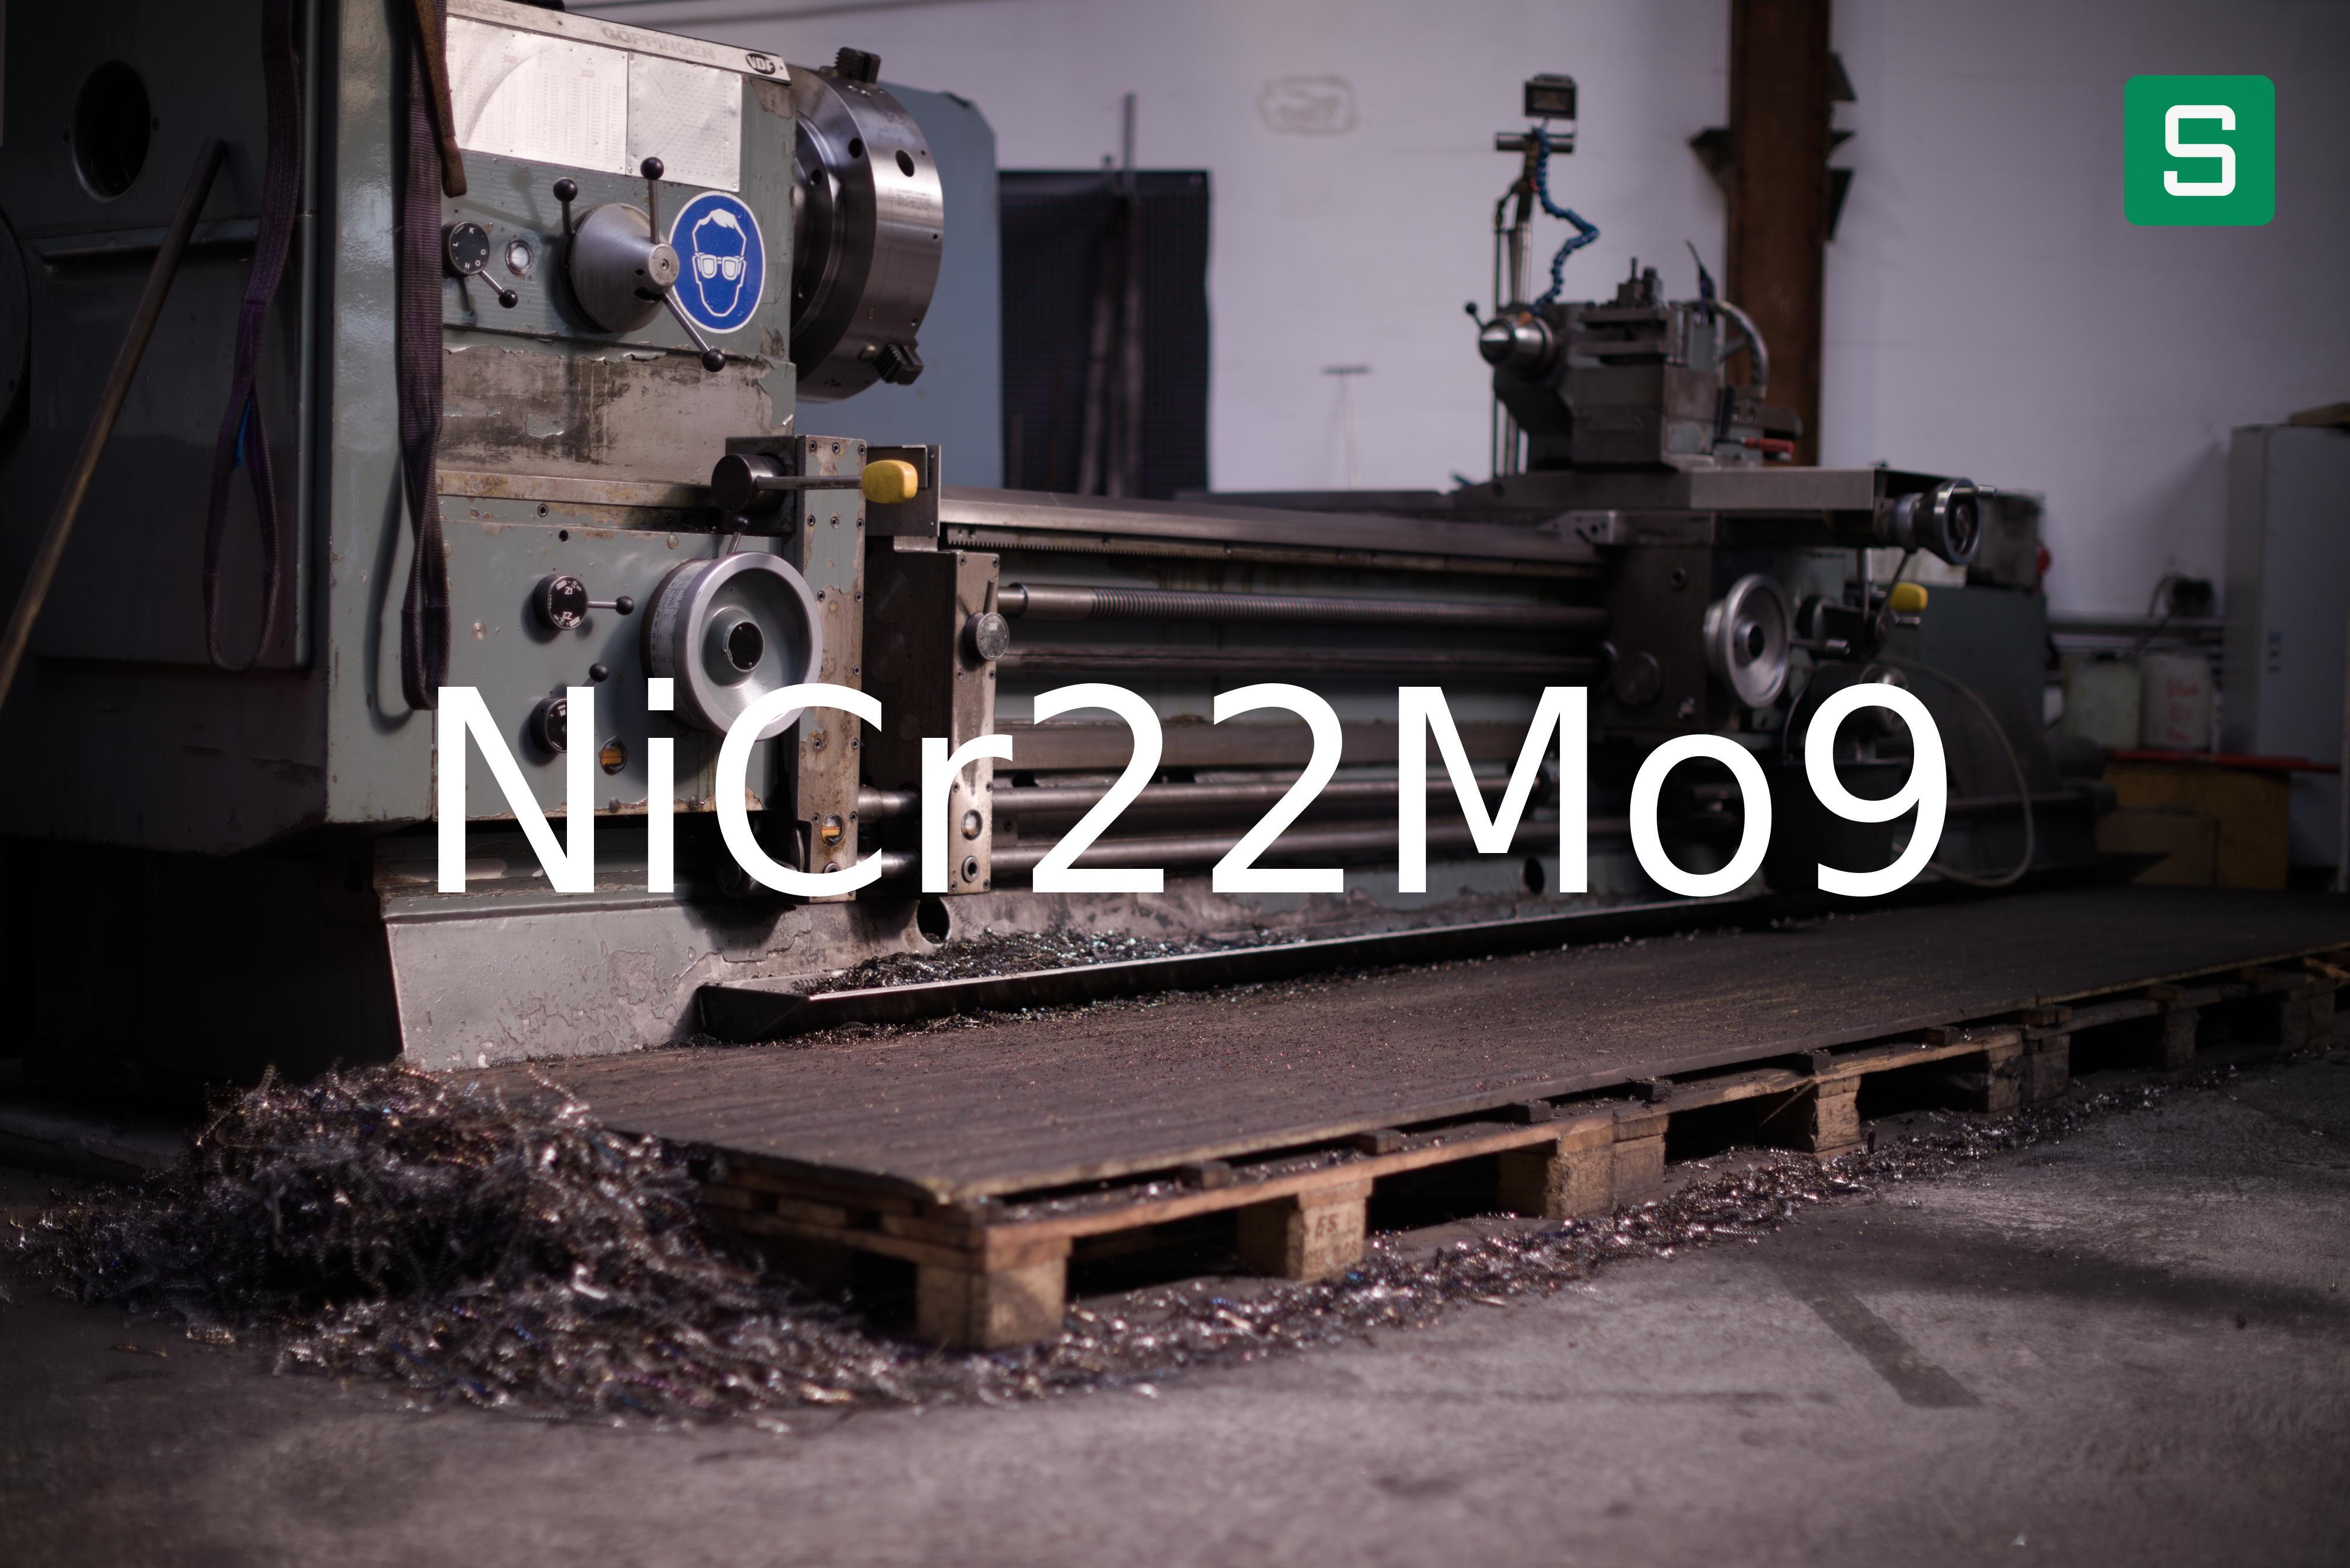 Steel Material: NiCr22Mo9